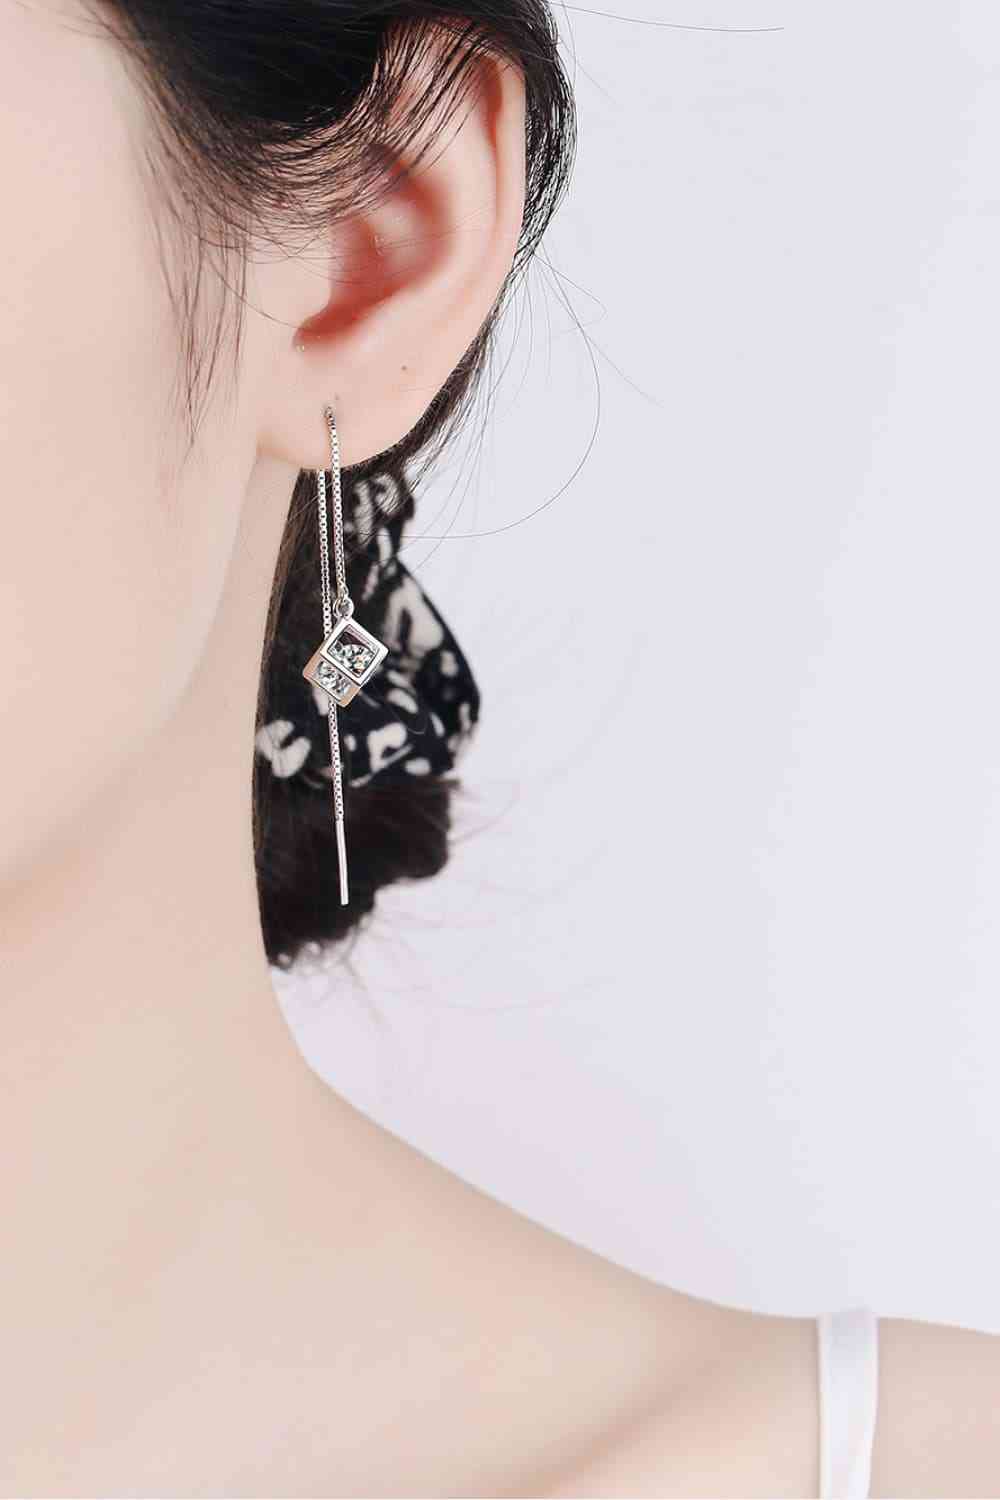 2 Carat Moissanite 925 Sterling Silver Threader Earrings - BEYOND